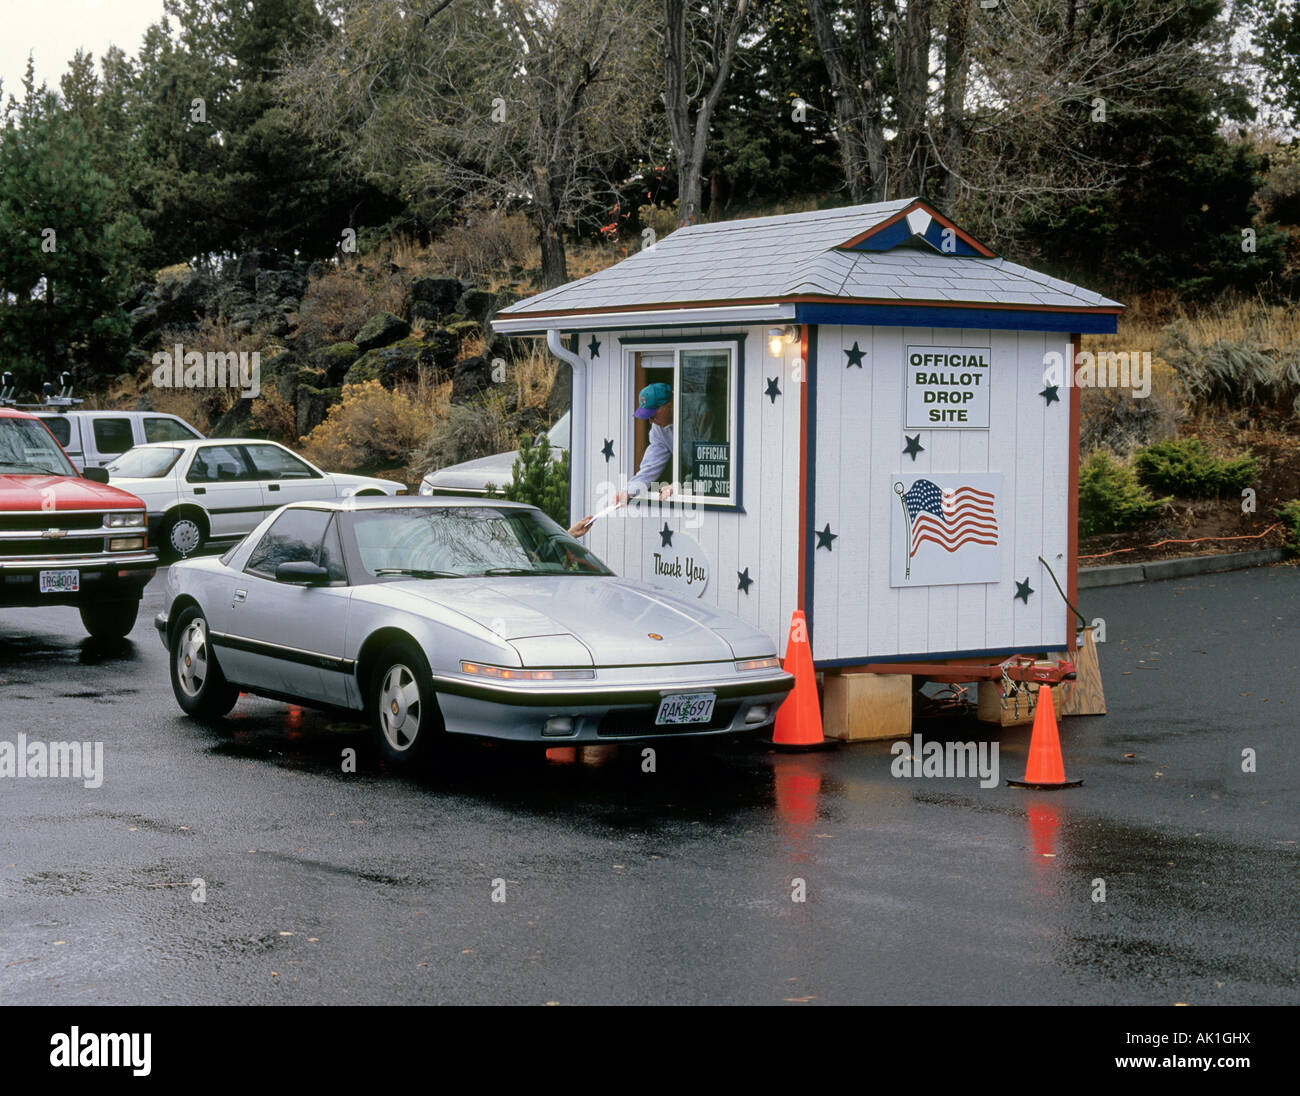 USA OREGON biegen A Autofahrer fällt seine Post in Abstimmung bei einem amtlichen Stimmzettel Drop-site Stockfoto